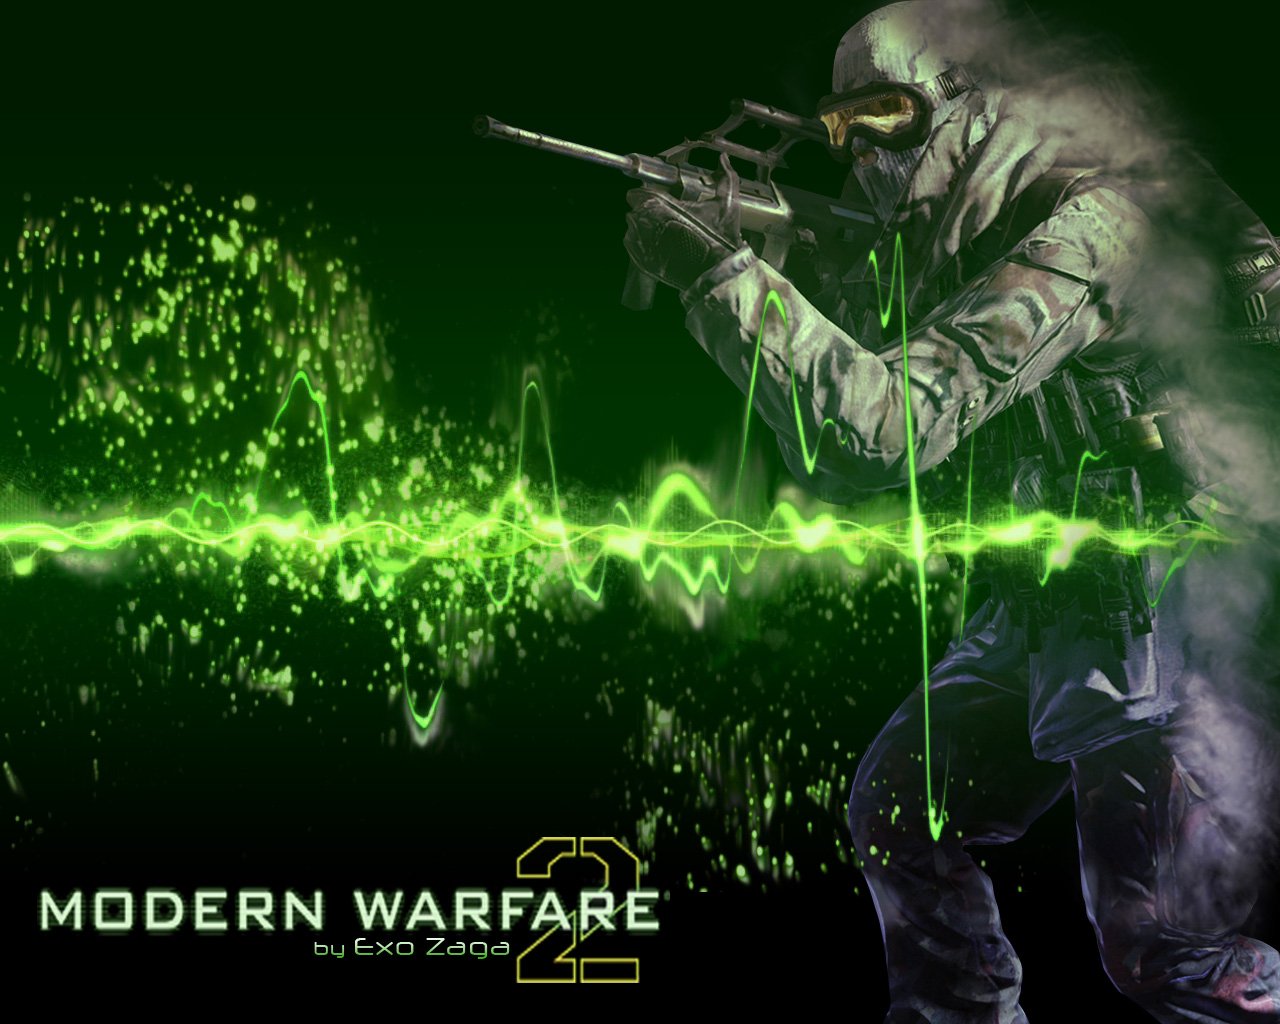 TechnoCage Call of Duty Modern Warfare 3 Wallpaper In HD